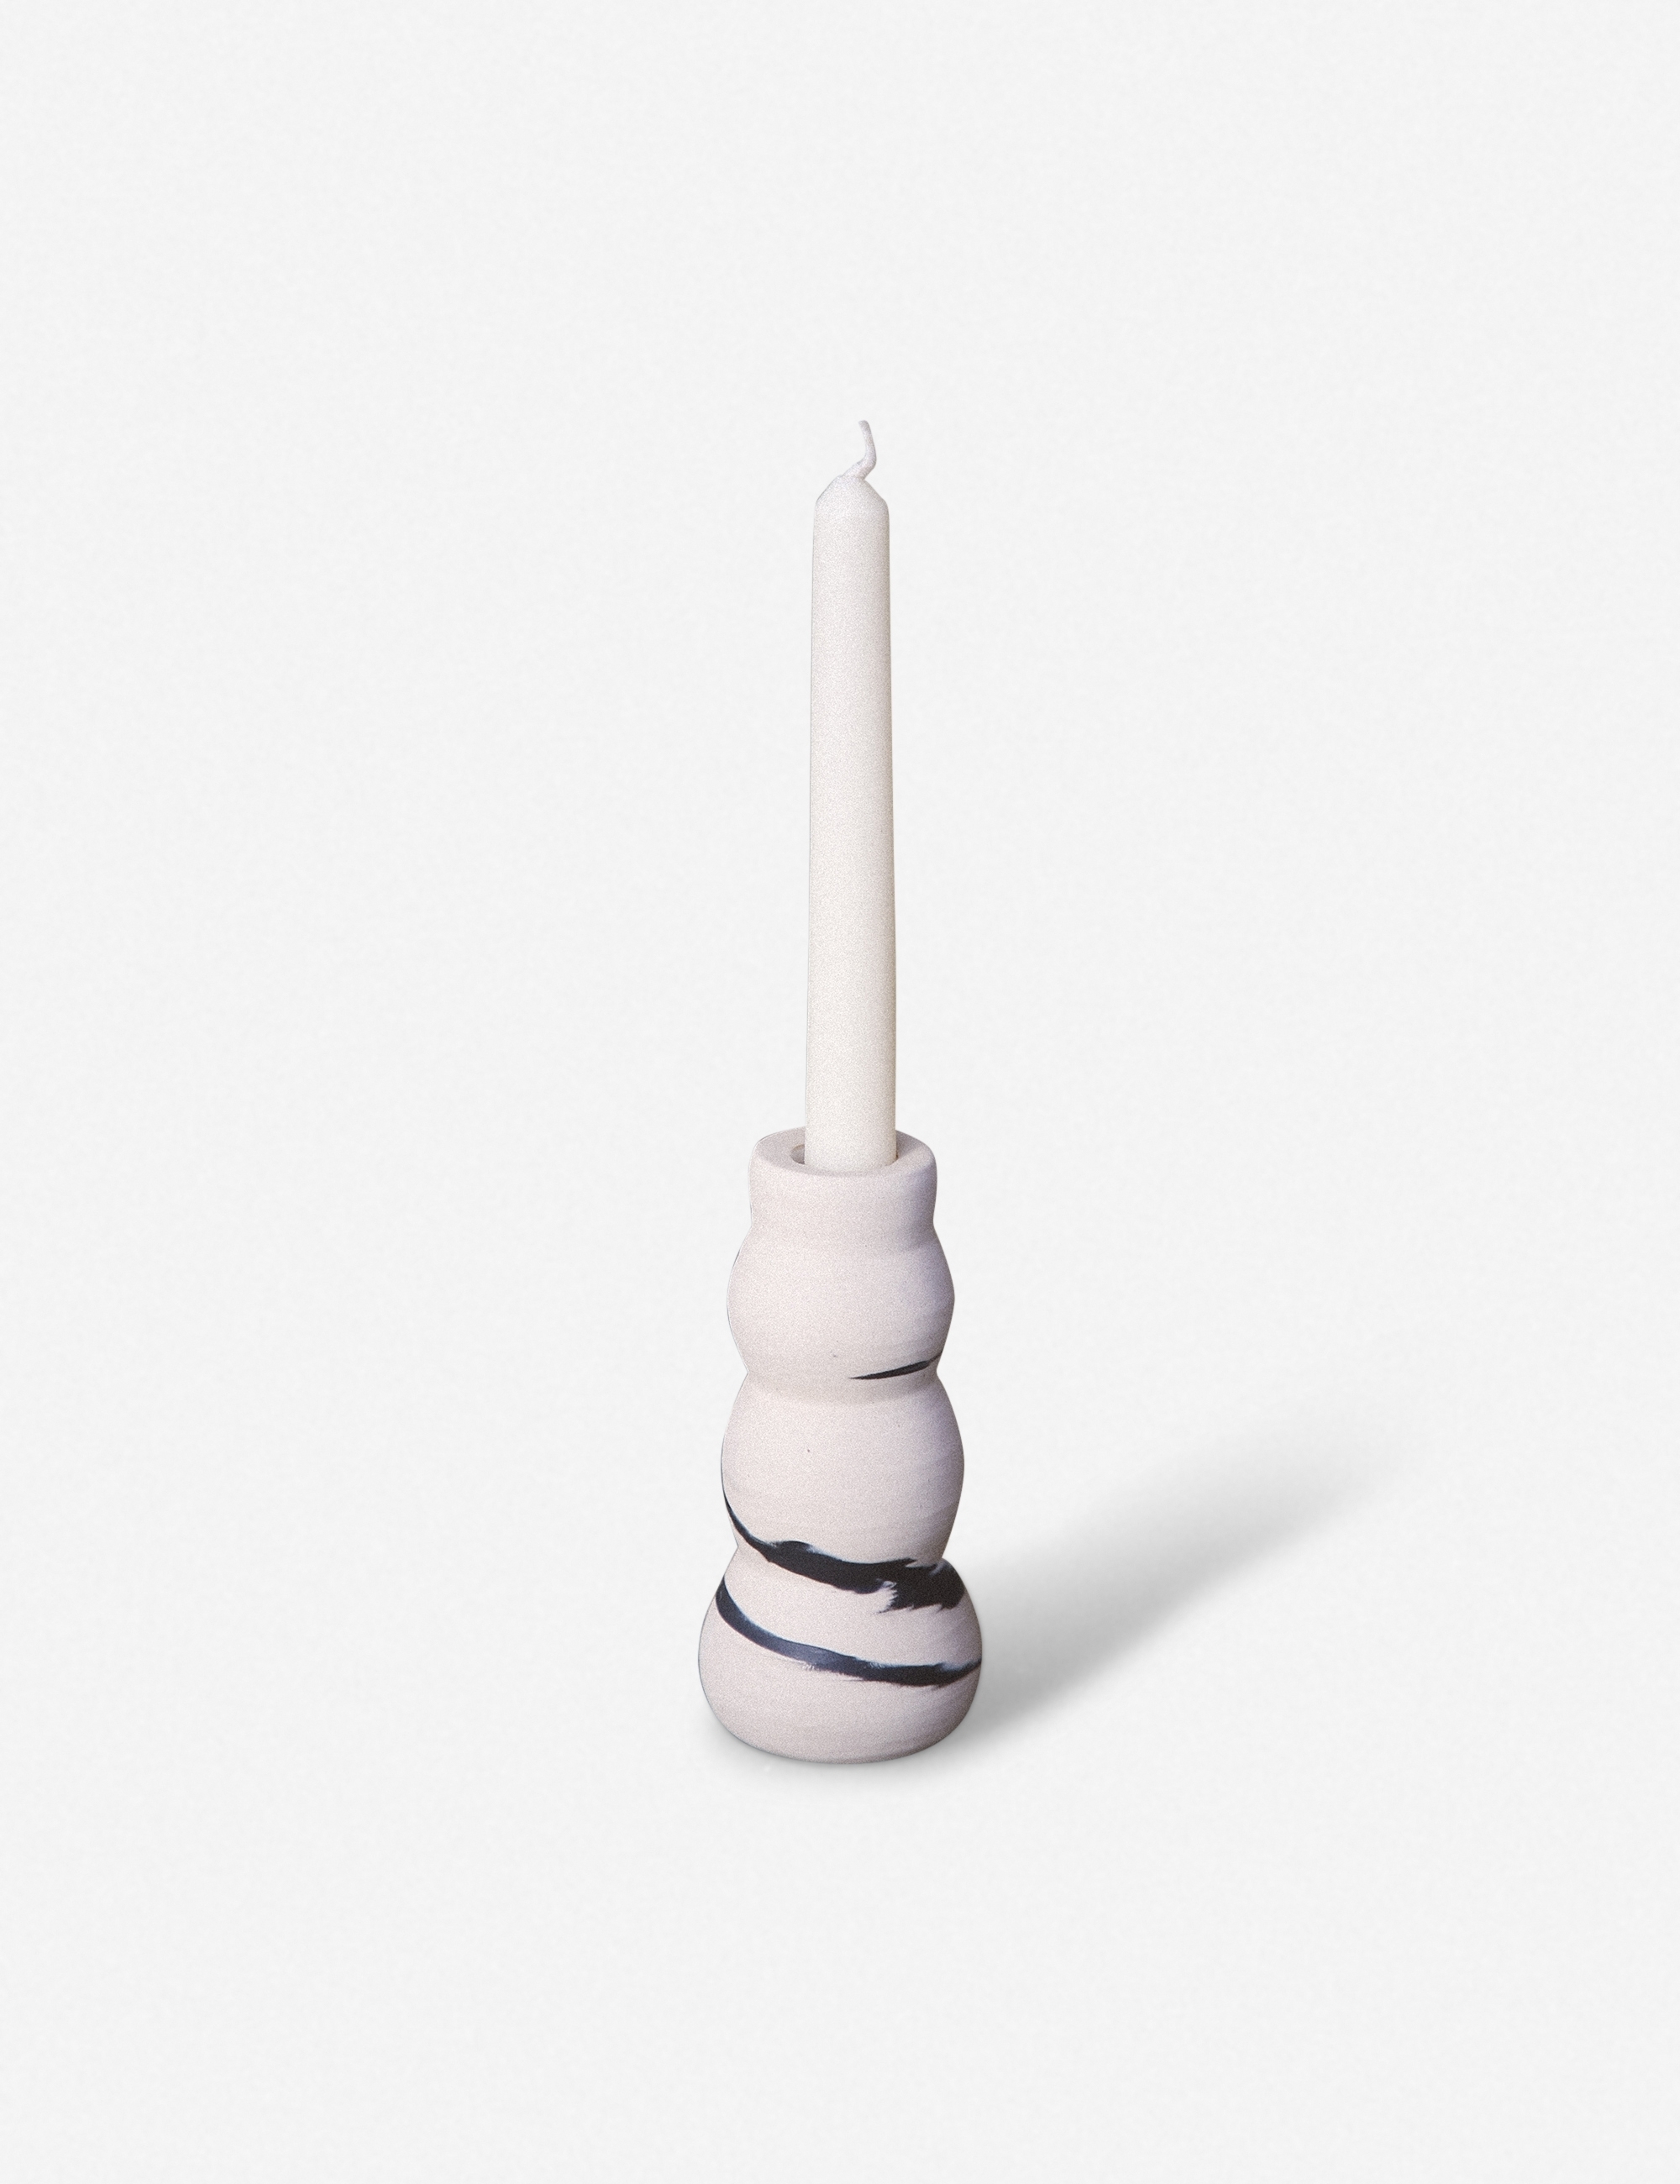 Salamat Ceramics Candle Holder, White and Onyx - Image 0